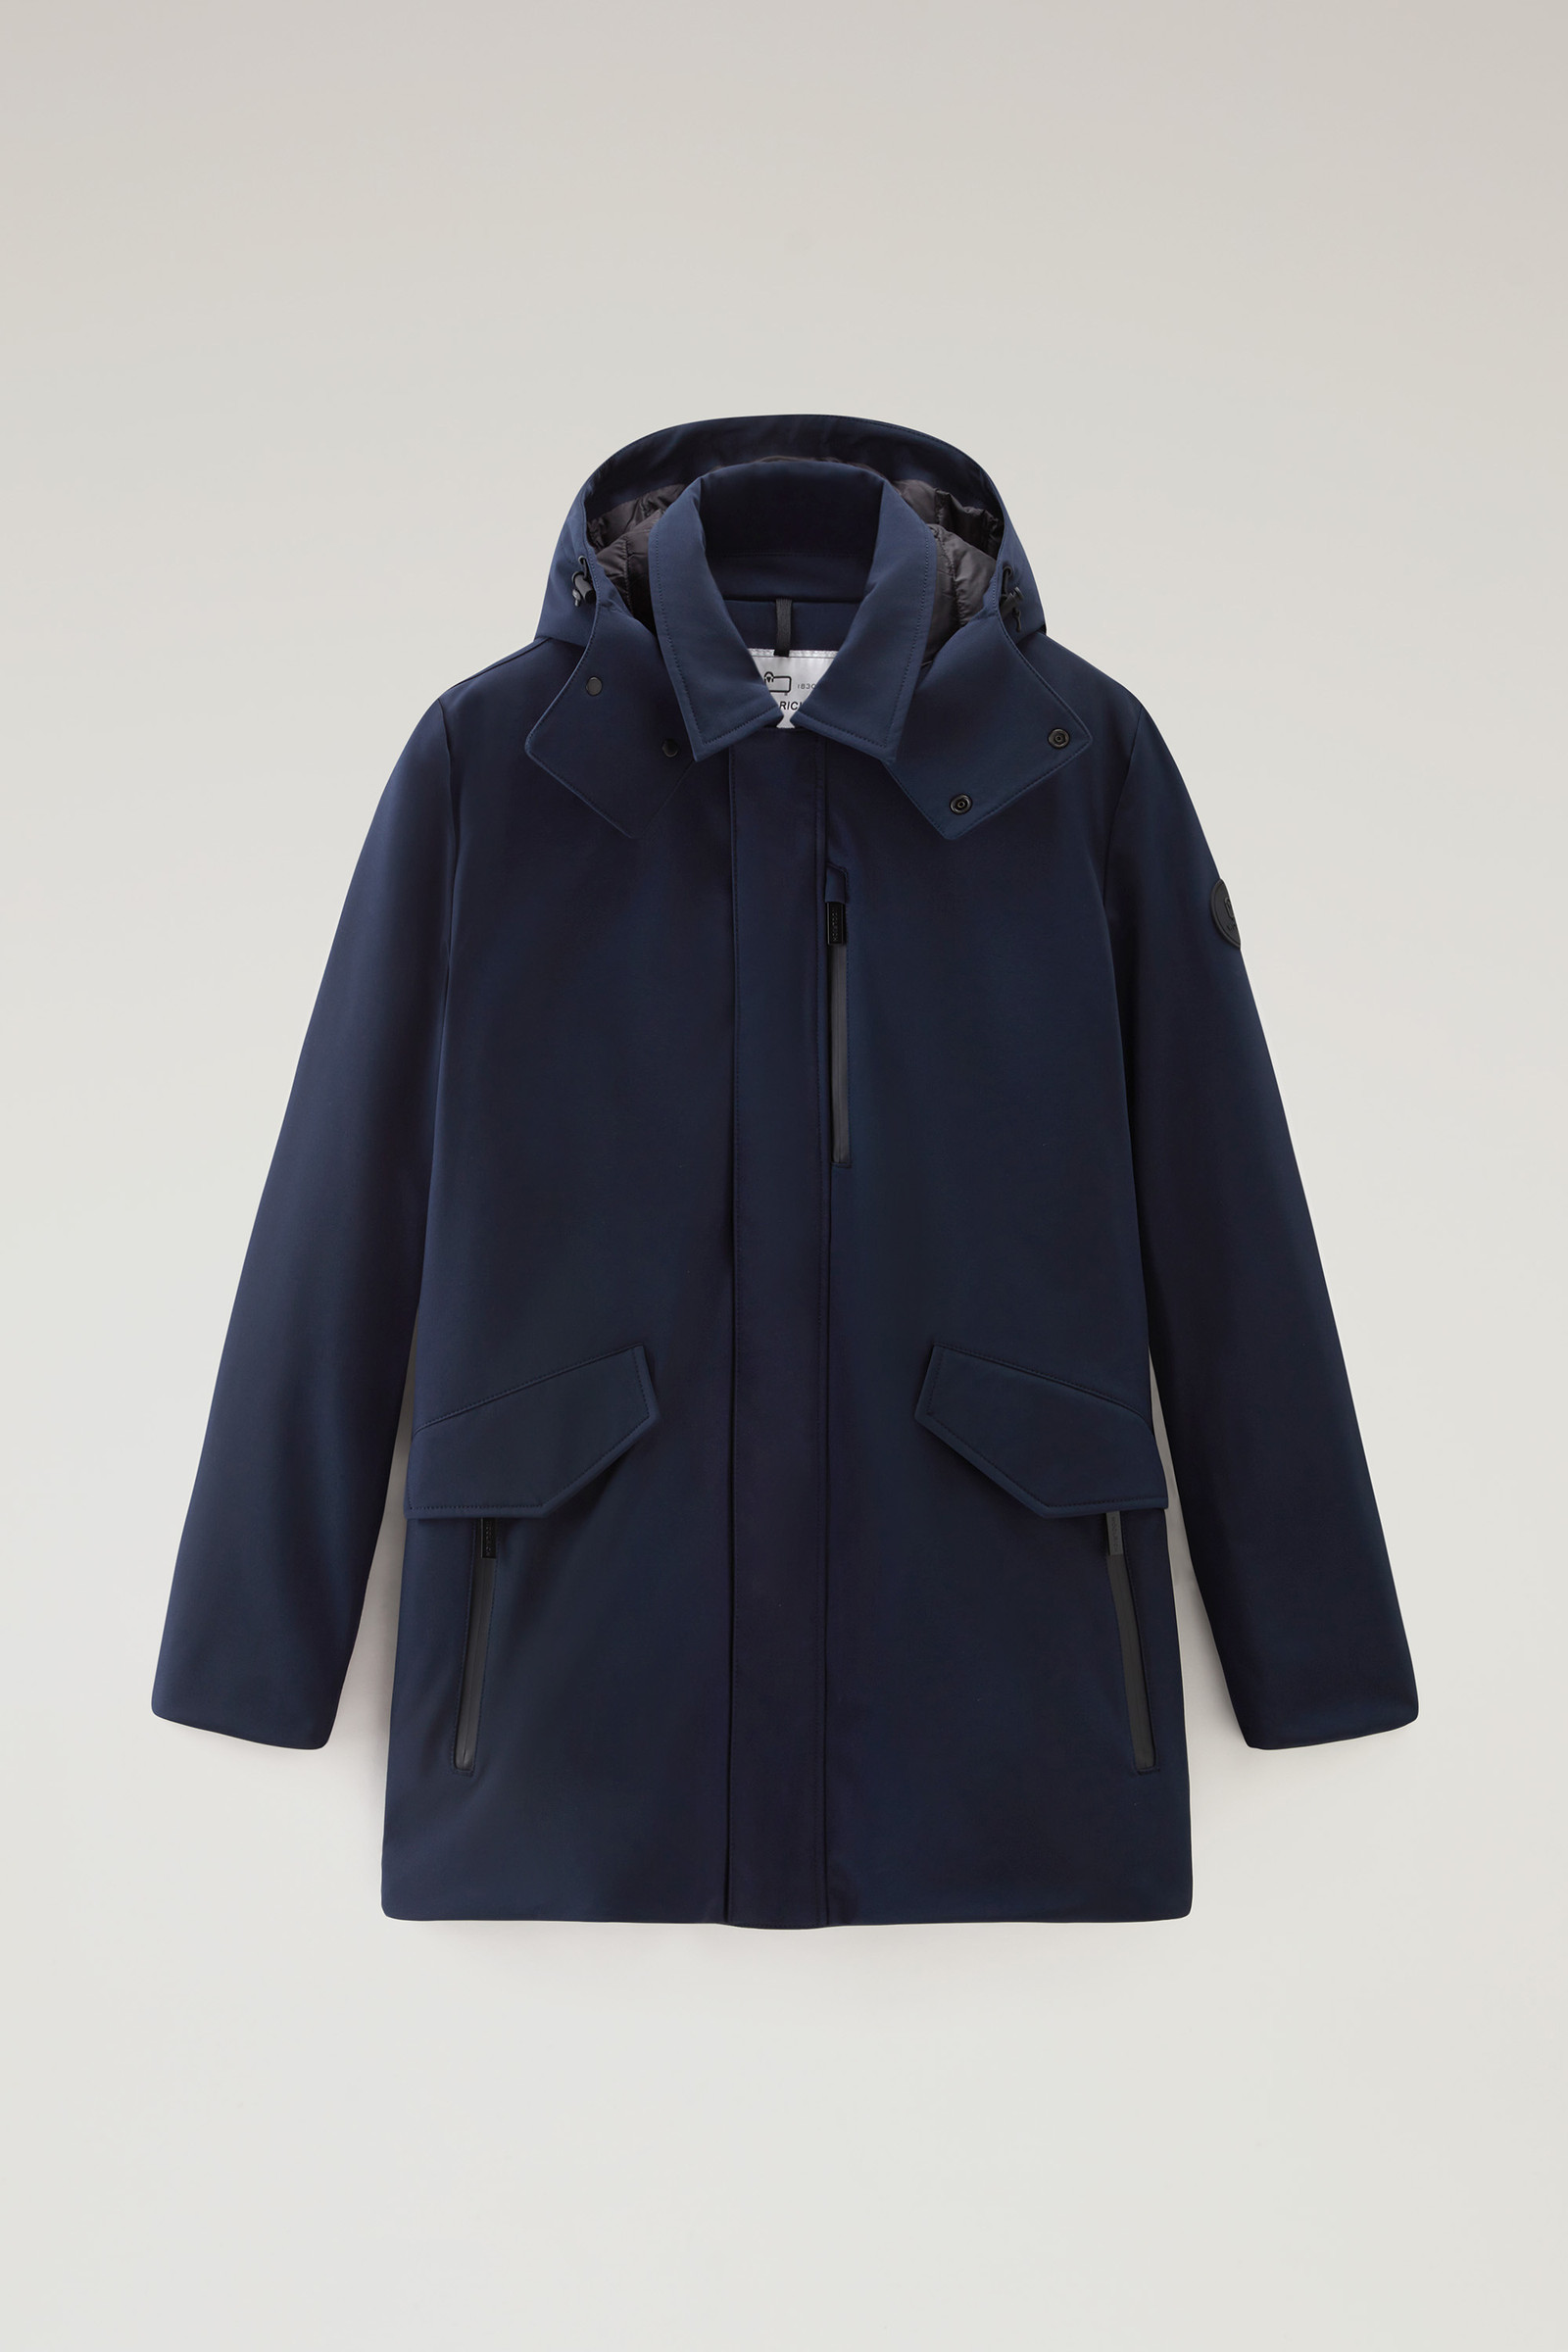 Men's Barrow Mac Coat in Tech Softshell Blue | Woolrich UK